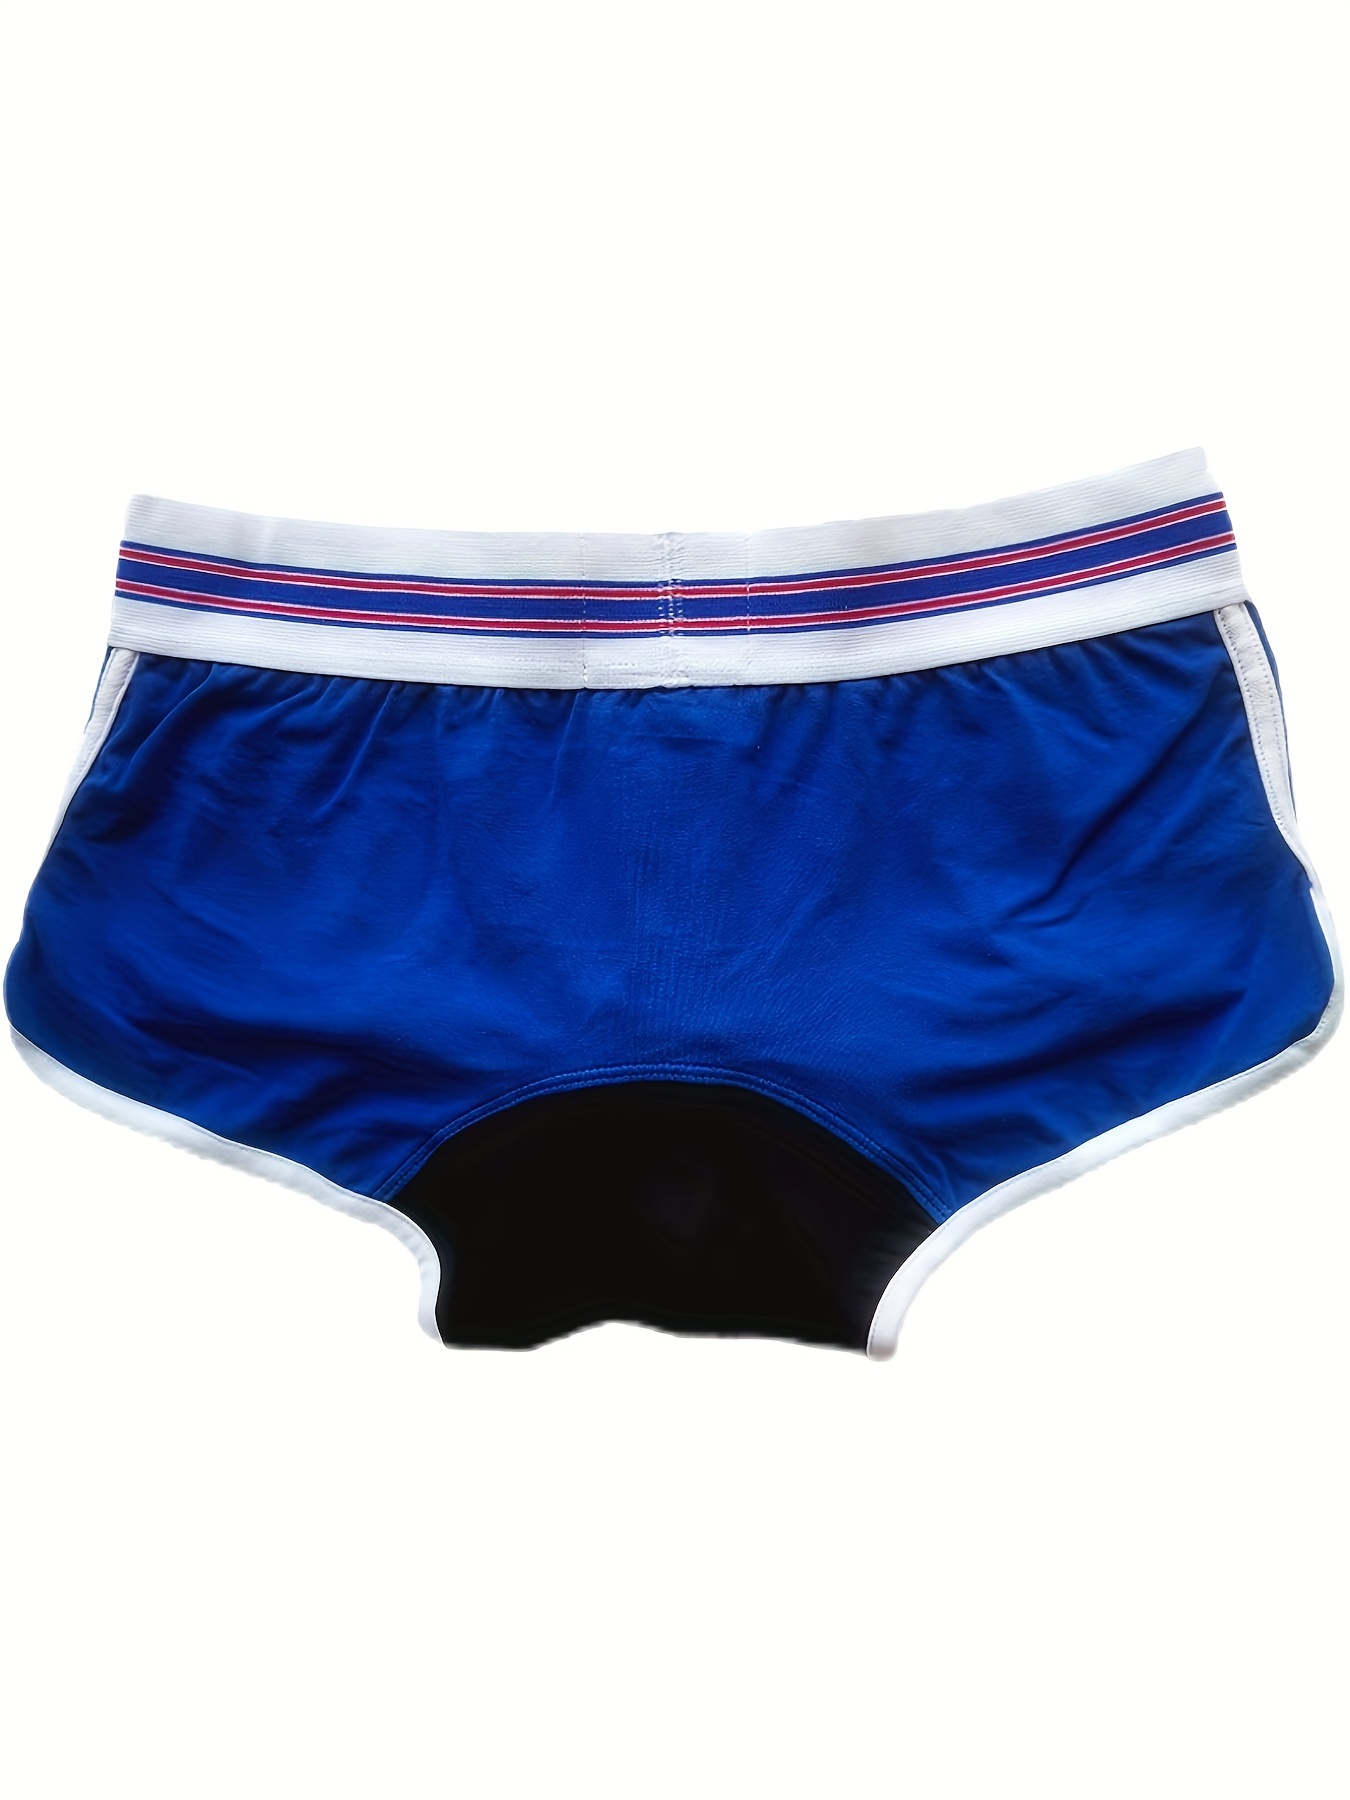 Men's Sexy Underwear Low waist Briefs U Pouch Boxers Striped